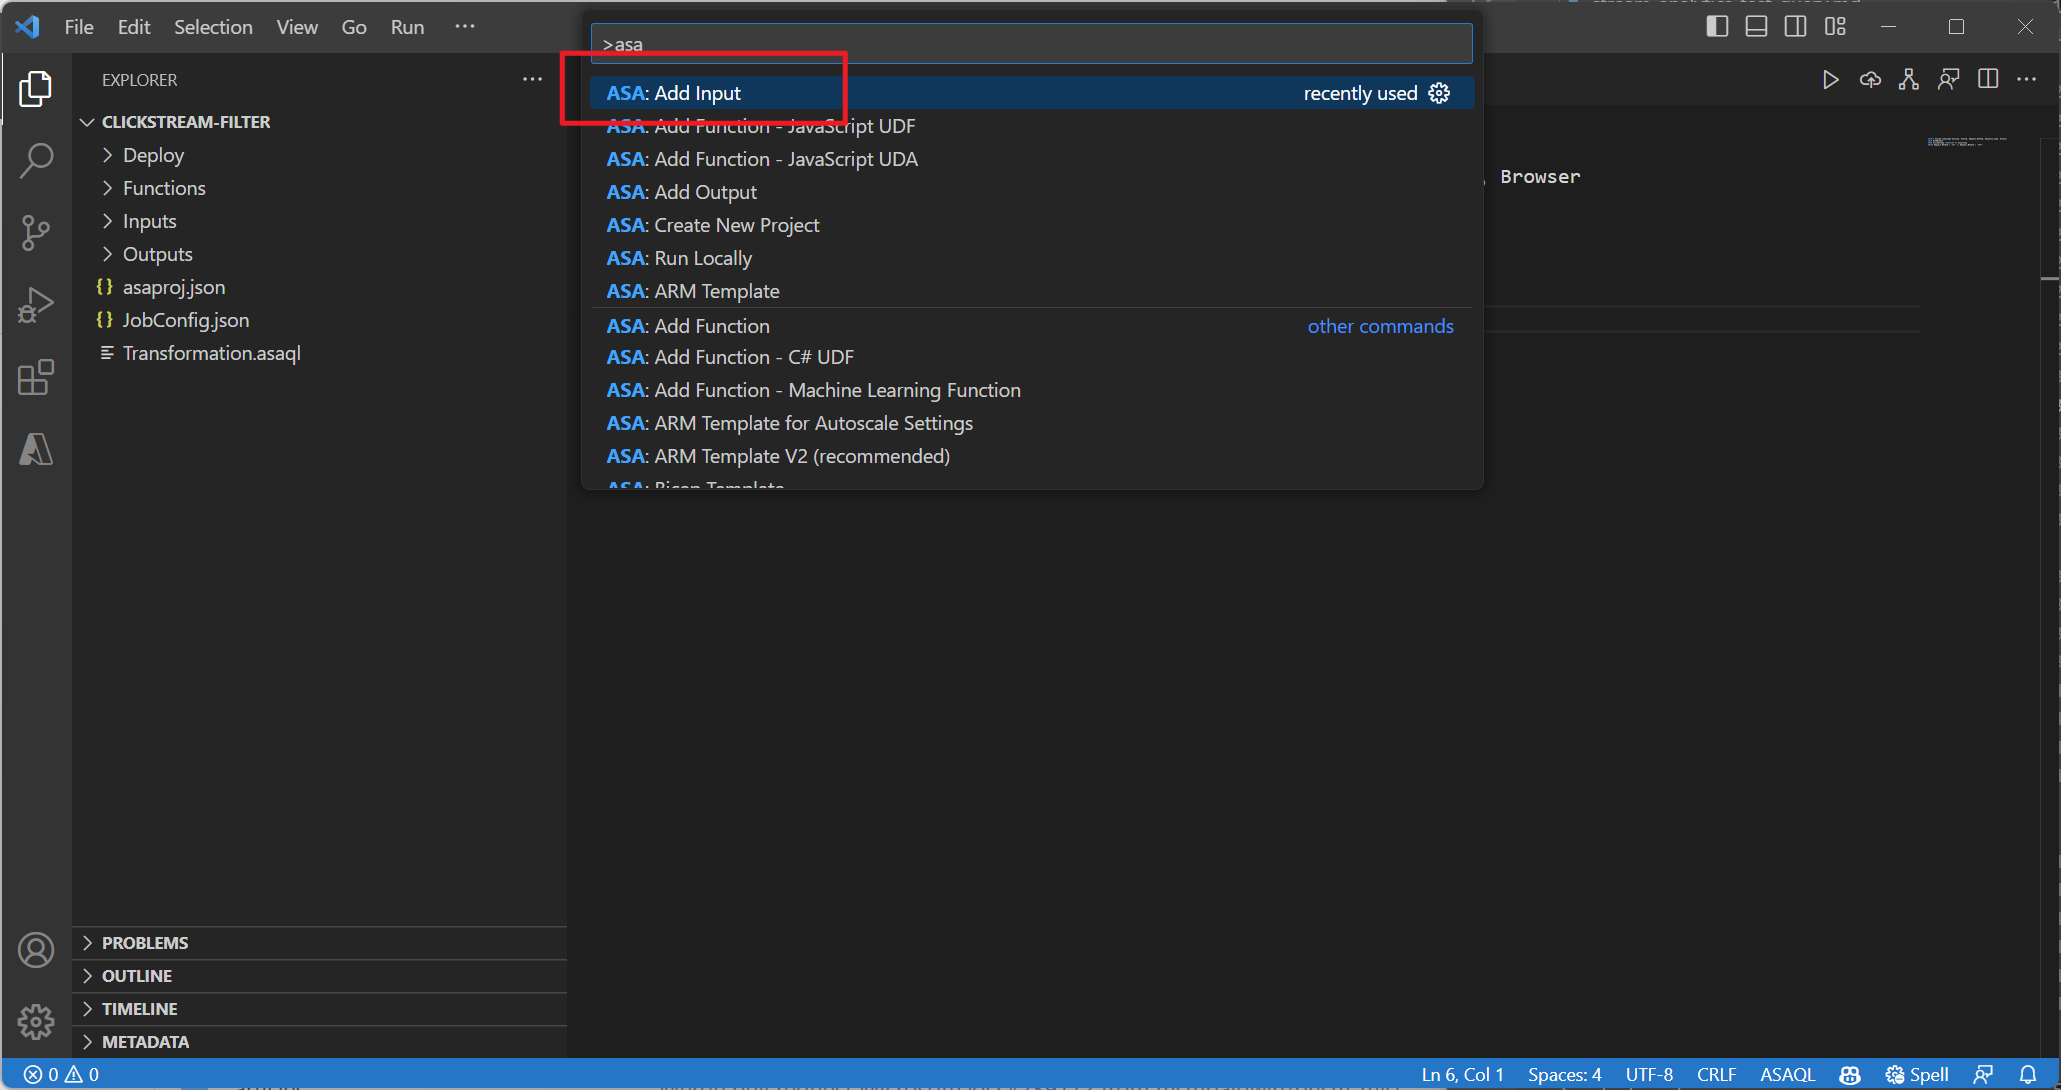 Schermopname van de ASA: Invoer toevoegen in het opdrachtenpalet van Visual Studio Code.